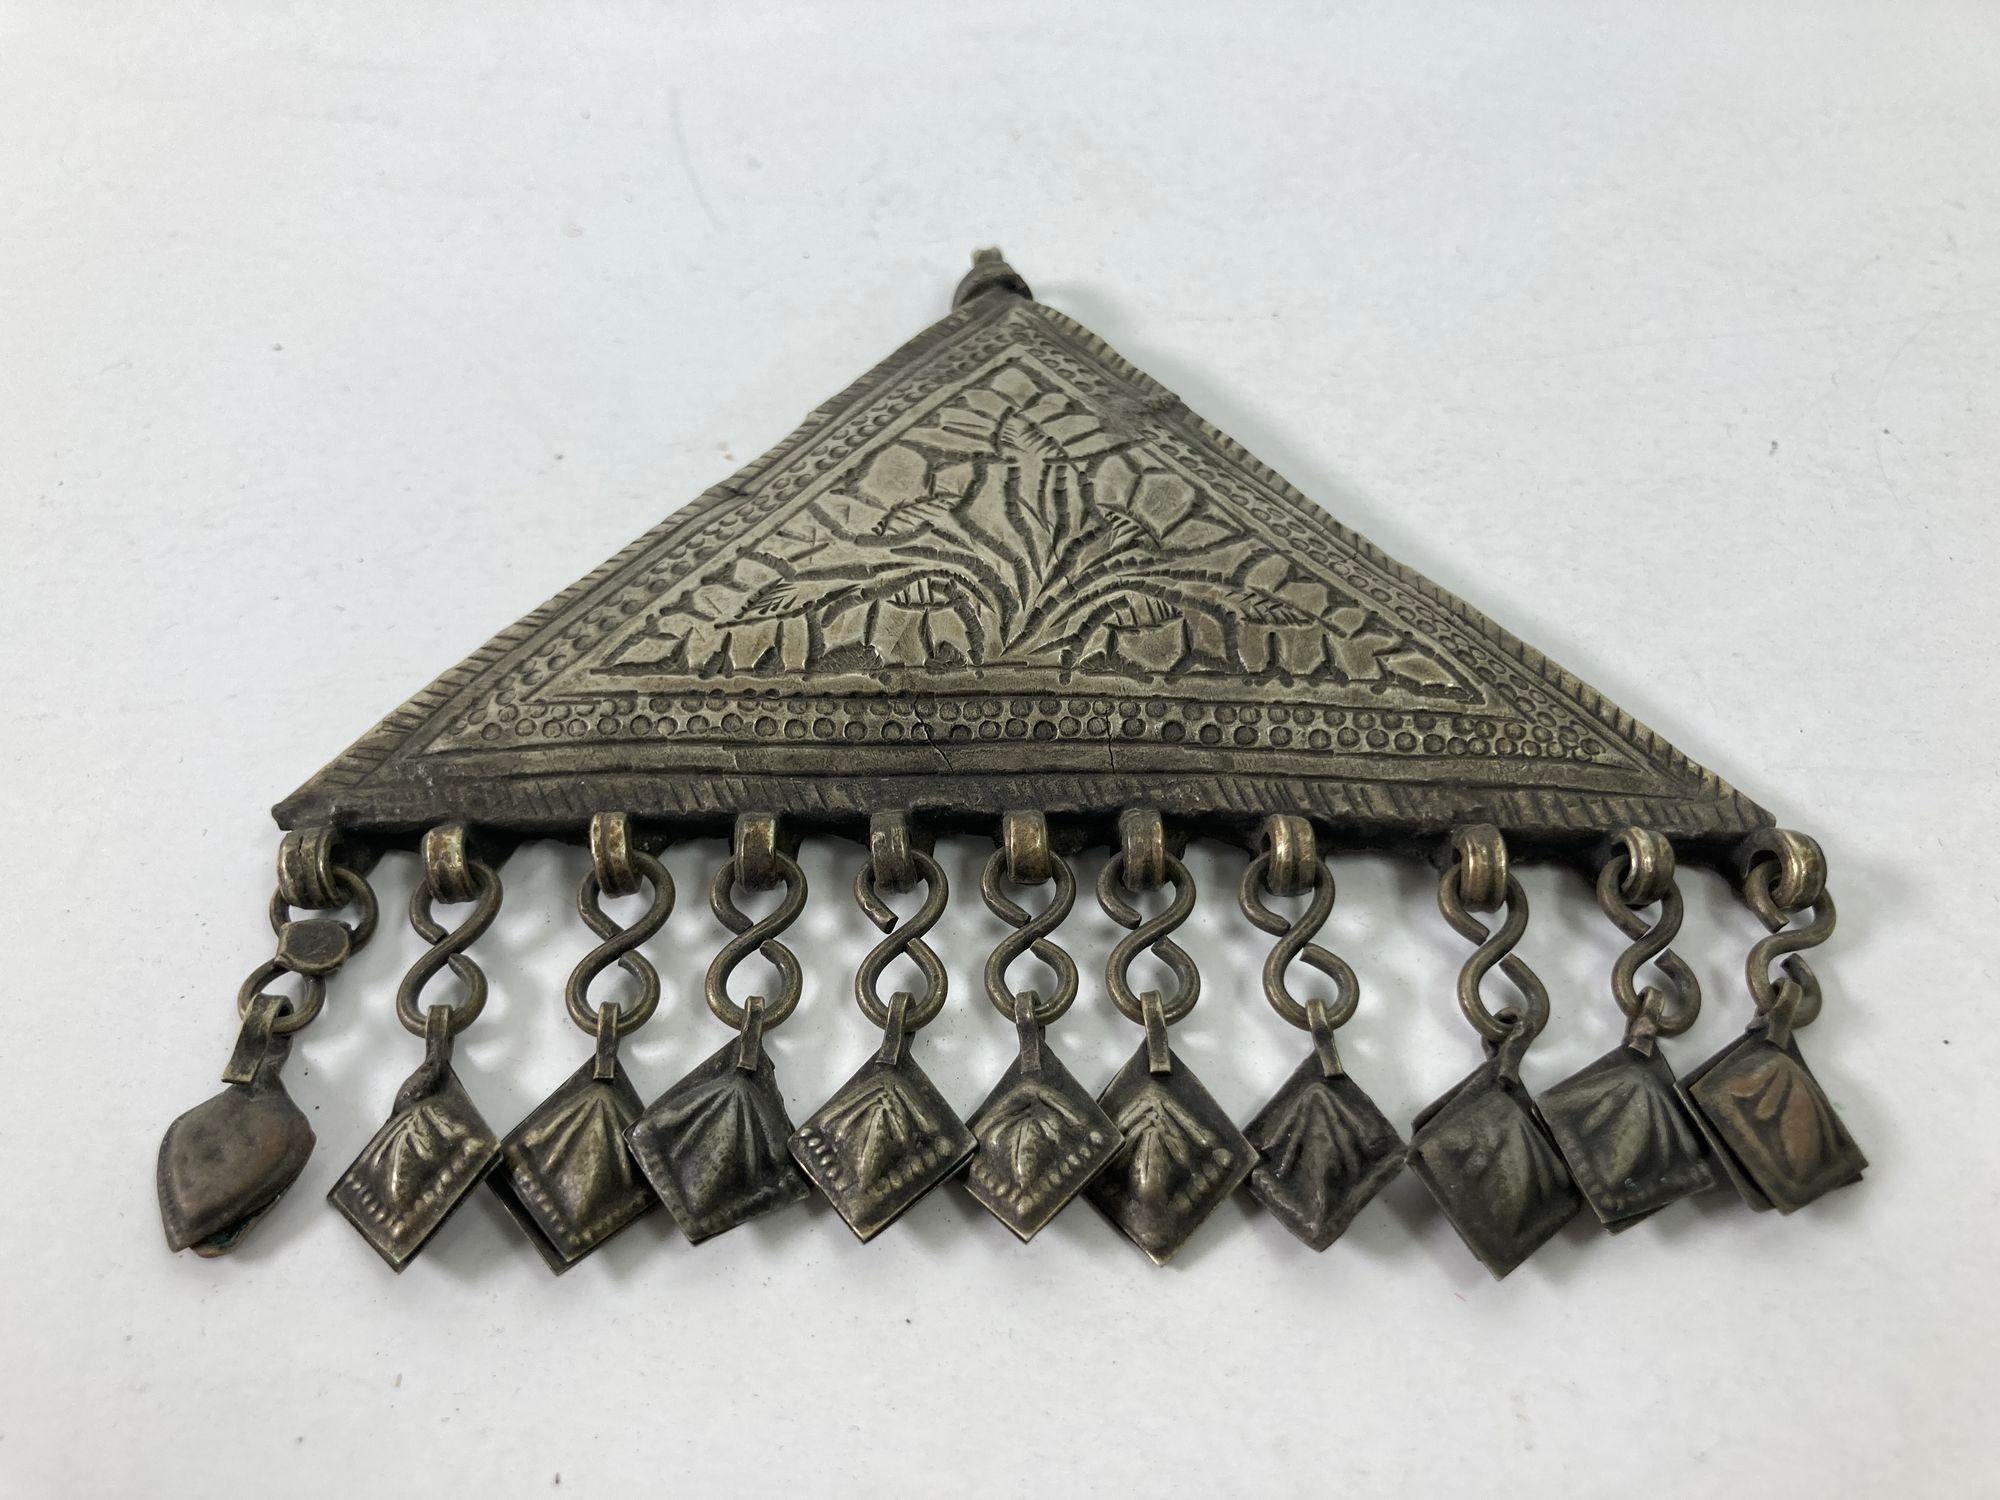 Boîte à talisman islamique en argent repoussé.
Grand pendentif talisman tribal ethnique berbère.
De forme triangulaire, ce talisman miniature en argent repoussé devait contenir certains versets de l'Apocalypse coranique, considérés comme ayant des